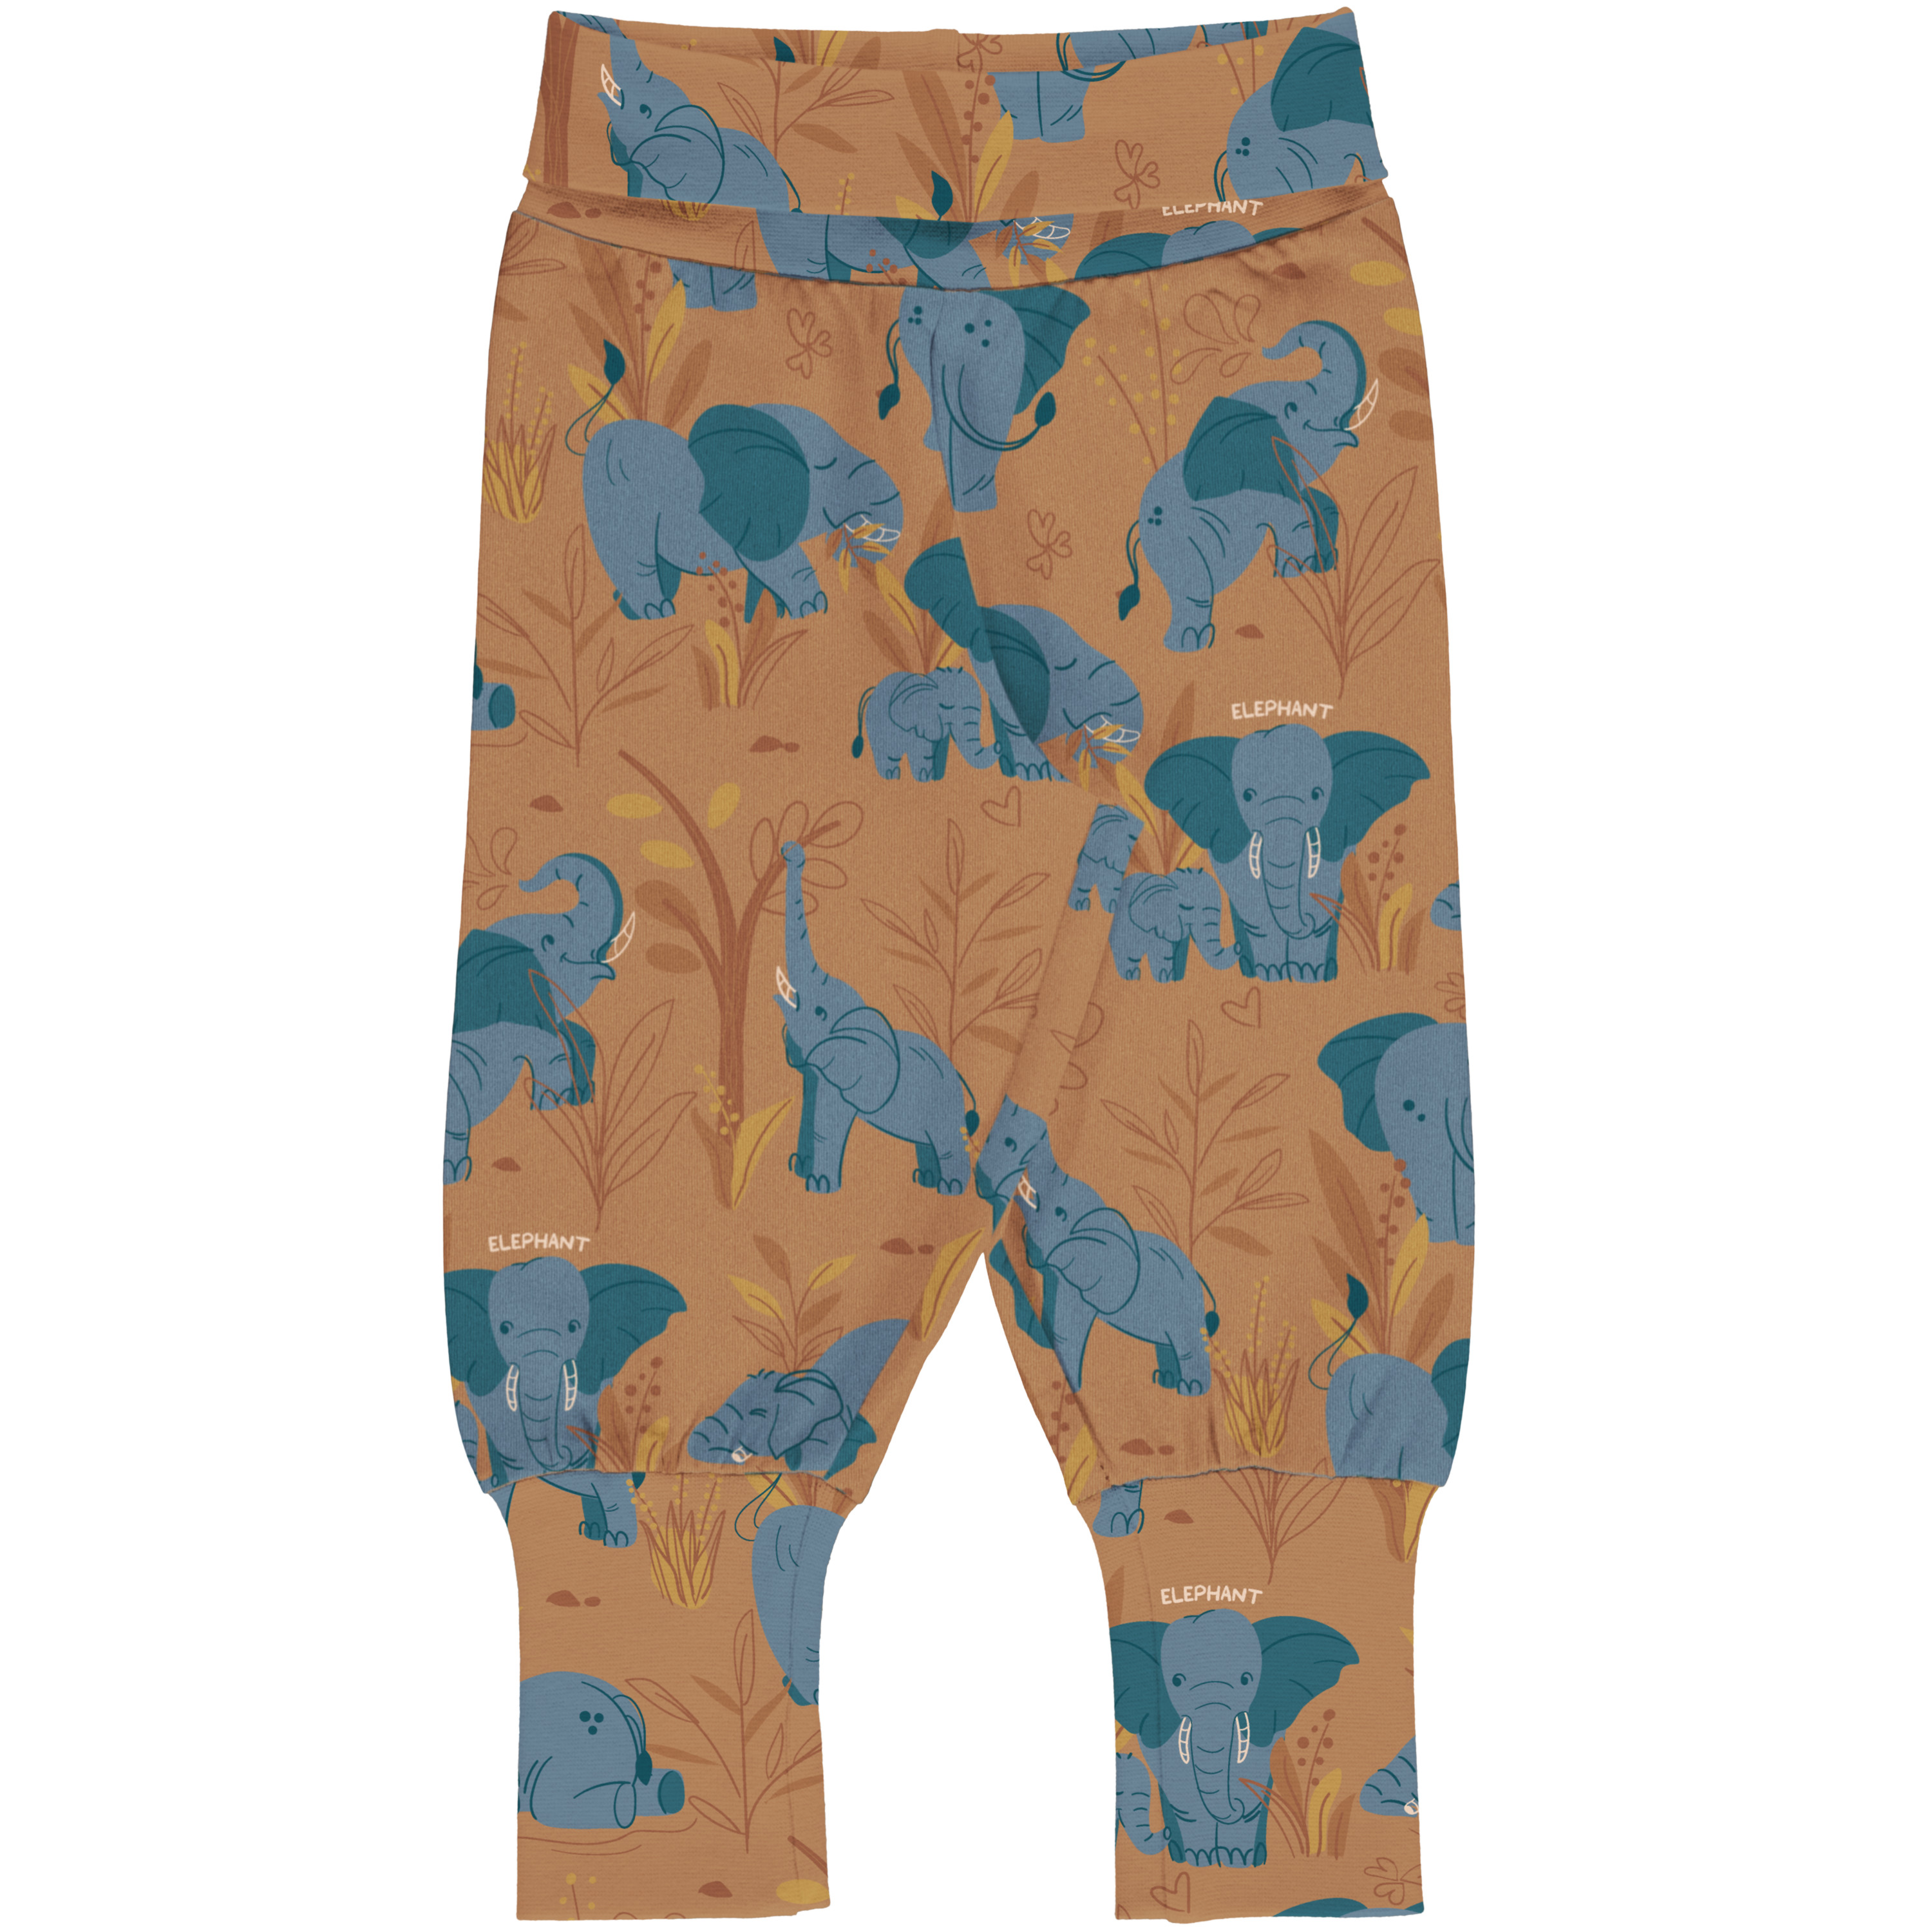 Meyadey Pants Waist ELEPHANT CLAN 074/080